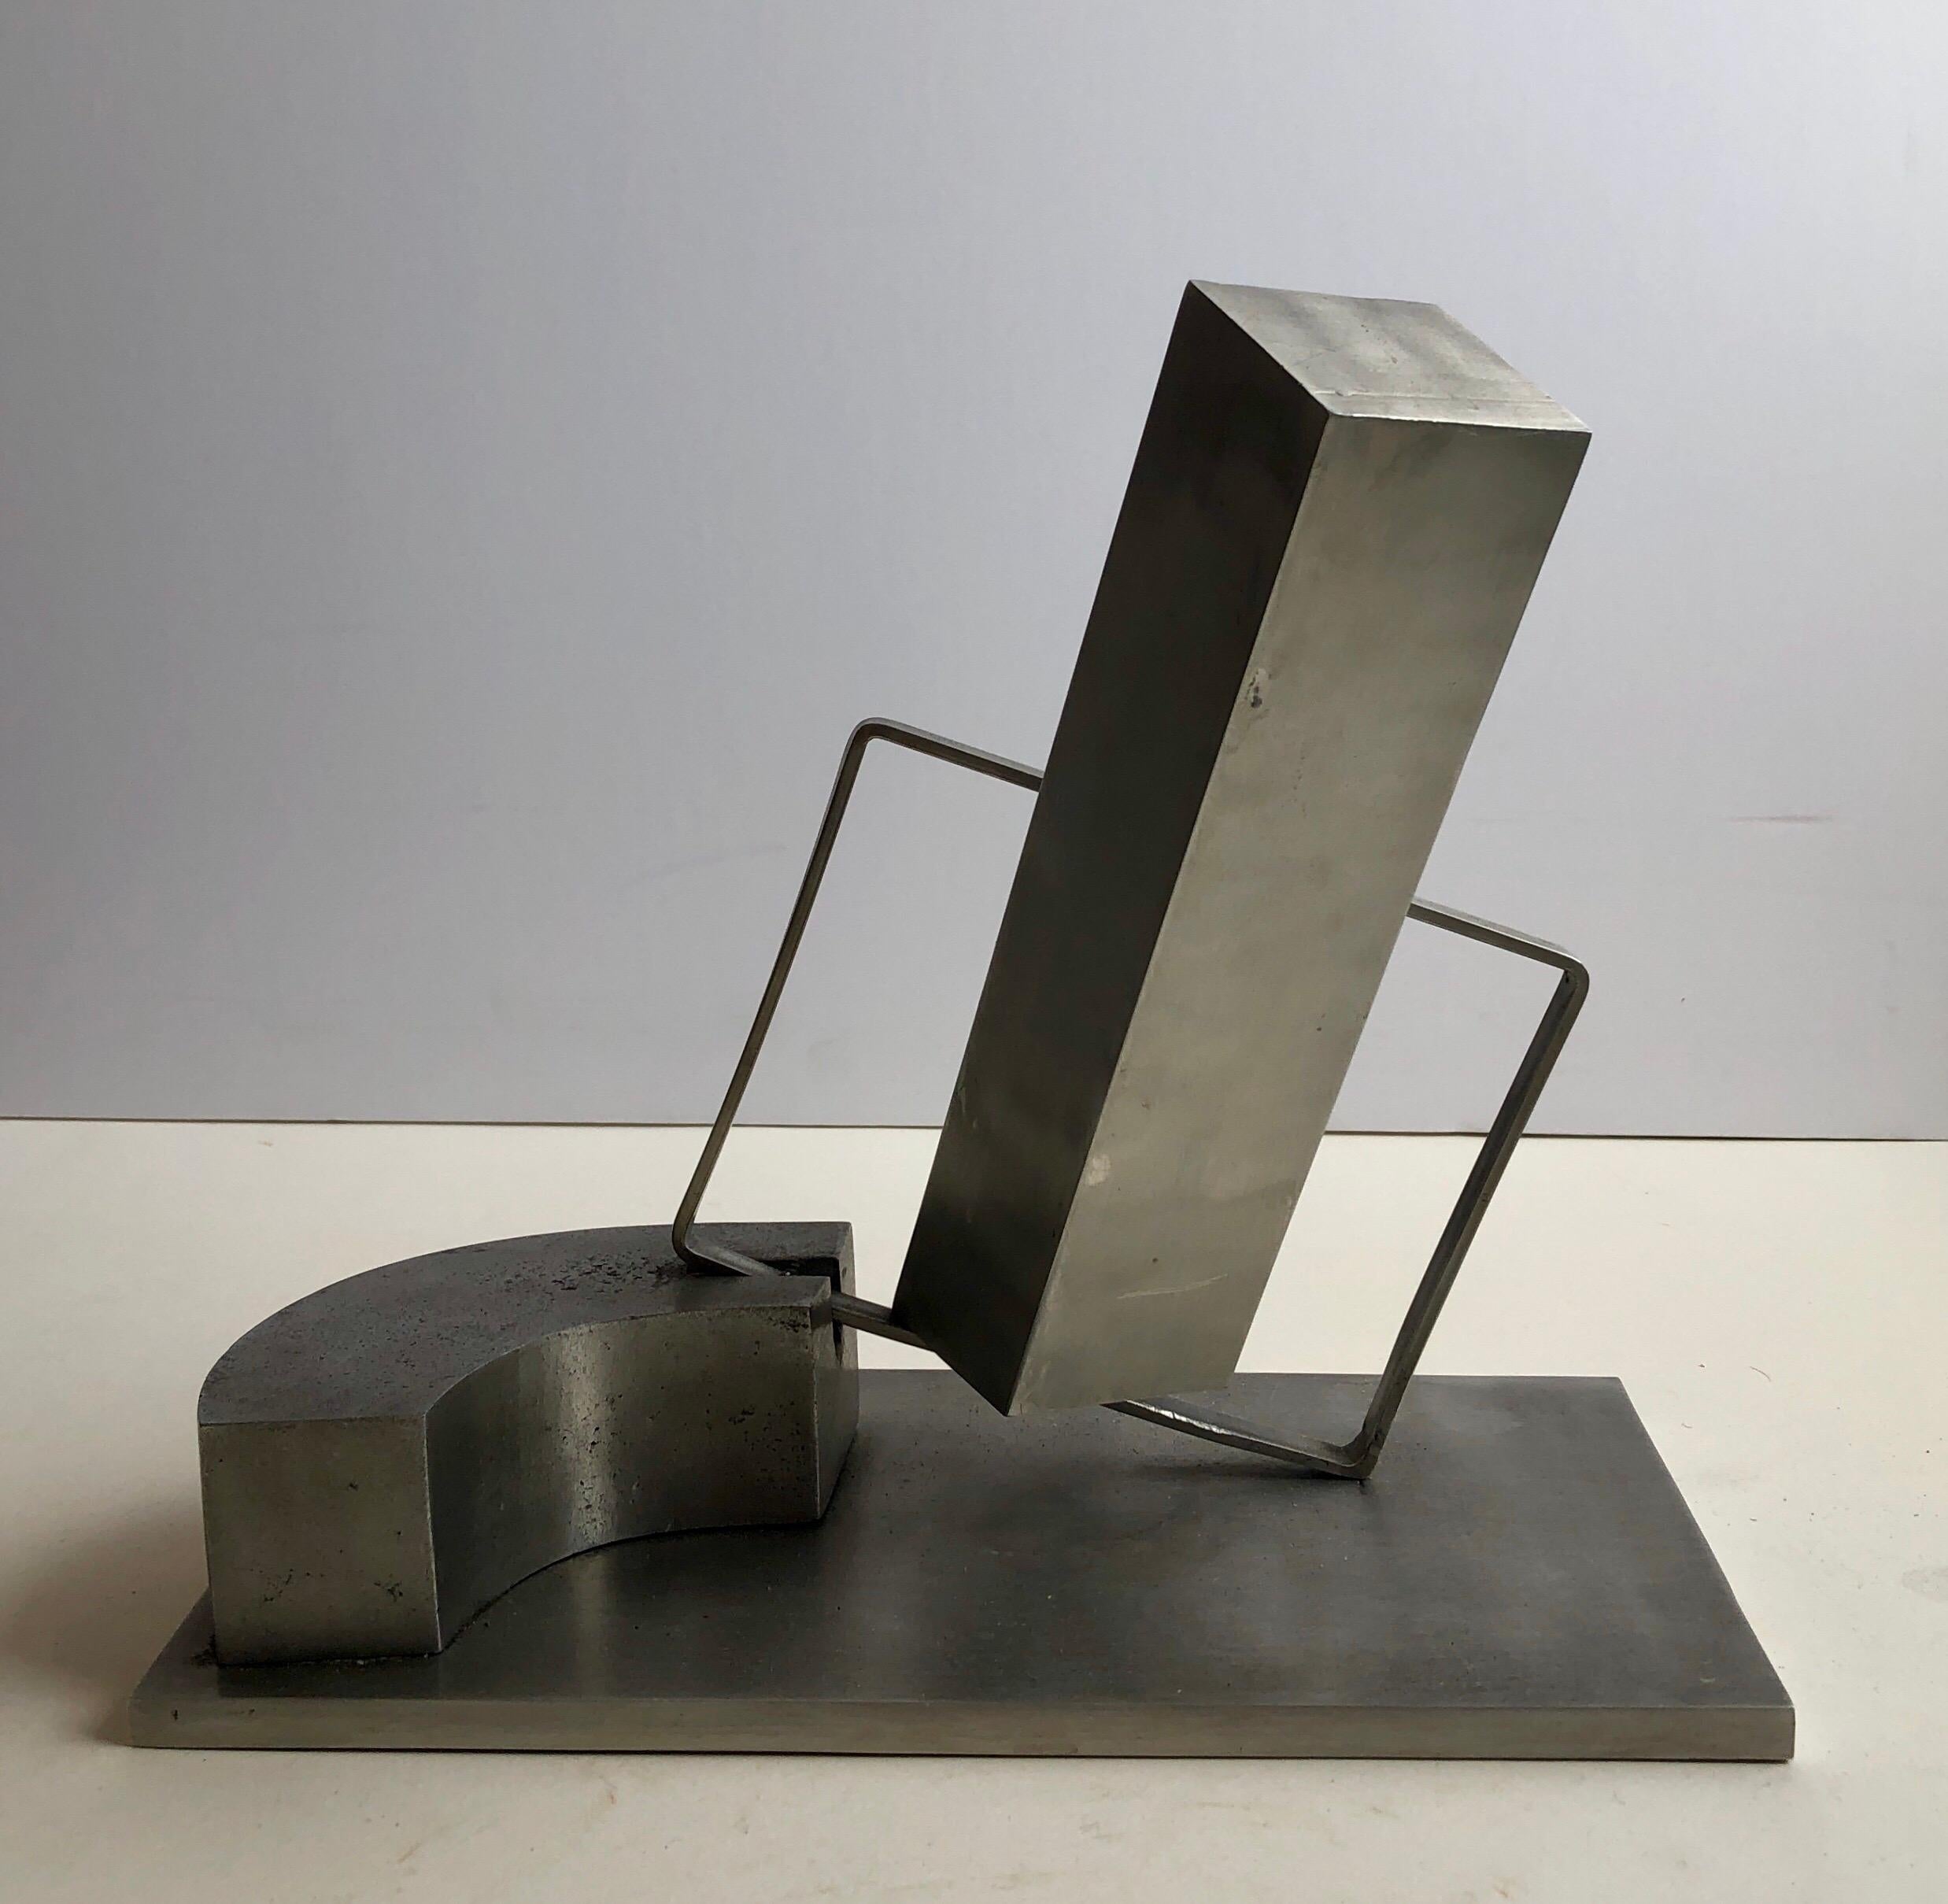 1969 Israeli Abstract Sculpture Stainless Steel Menashe Kadishman Suspension 6